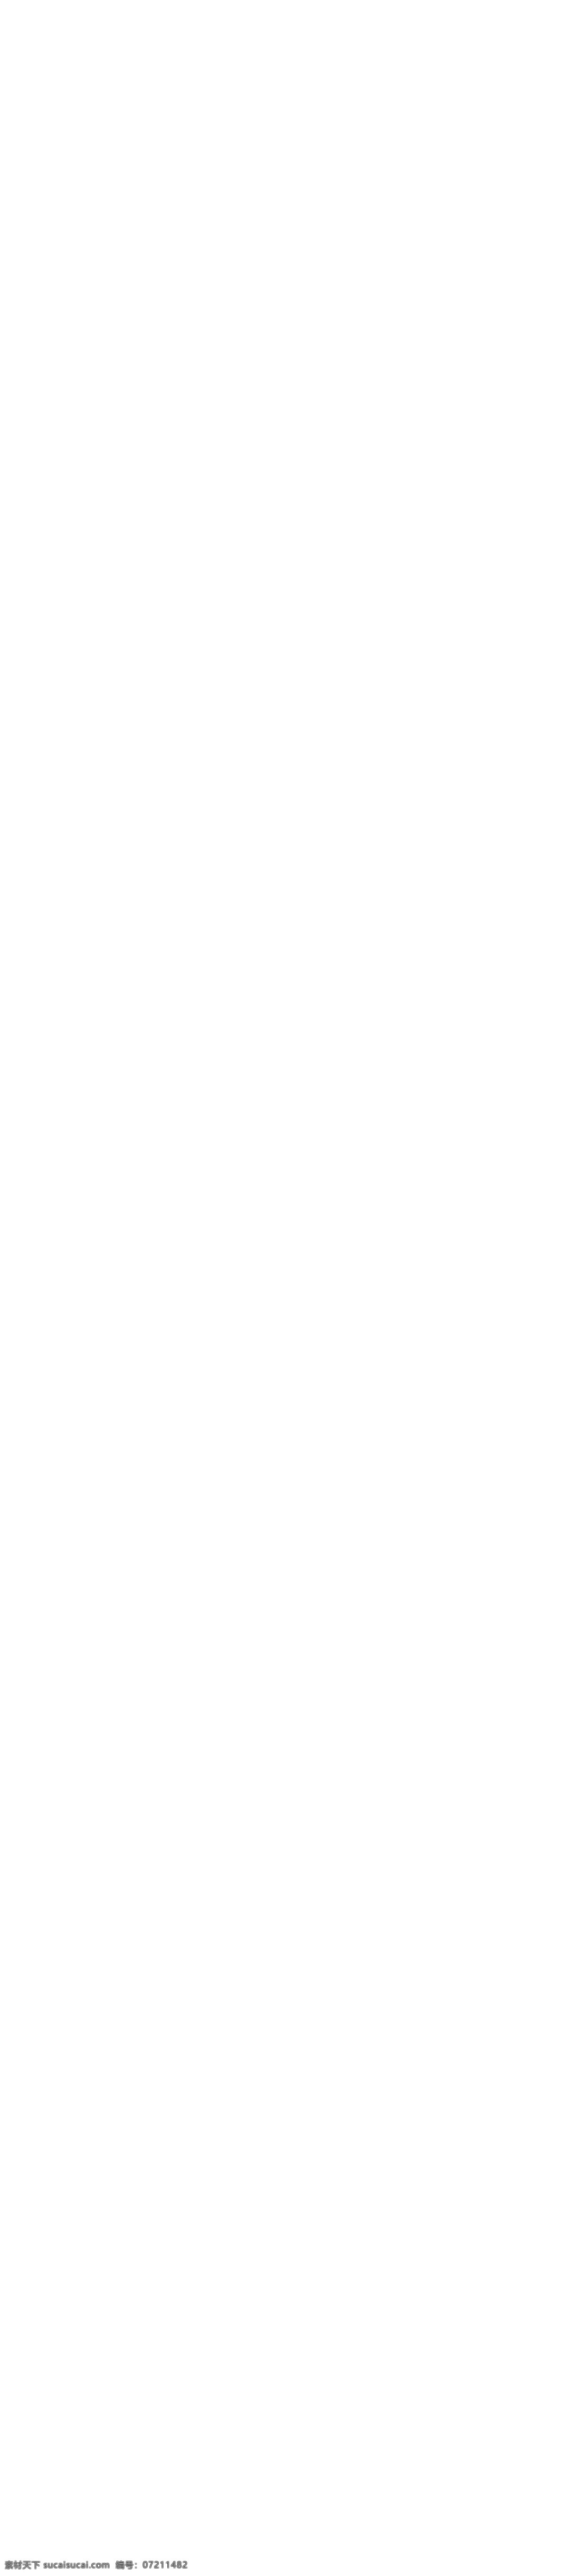 淘宝排版 店铺装修 字体排 网页模板 网站模板 企业模板 粉色网站 企业网页 web 界面设计 中文模板 淘宝装修 节日排版 活动 字体排版 白色